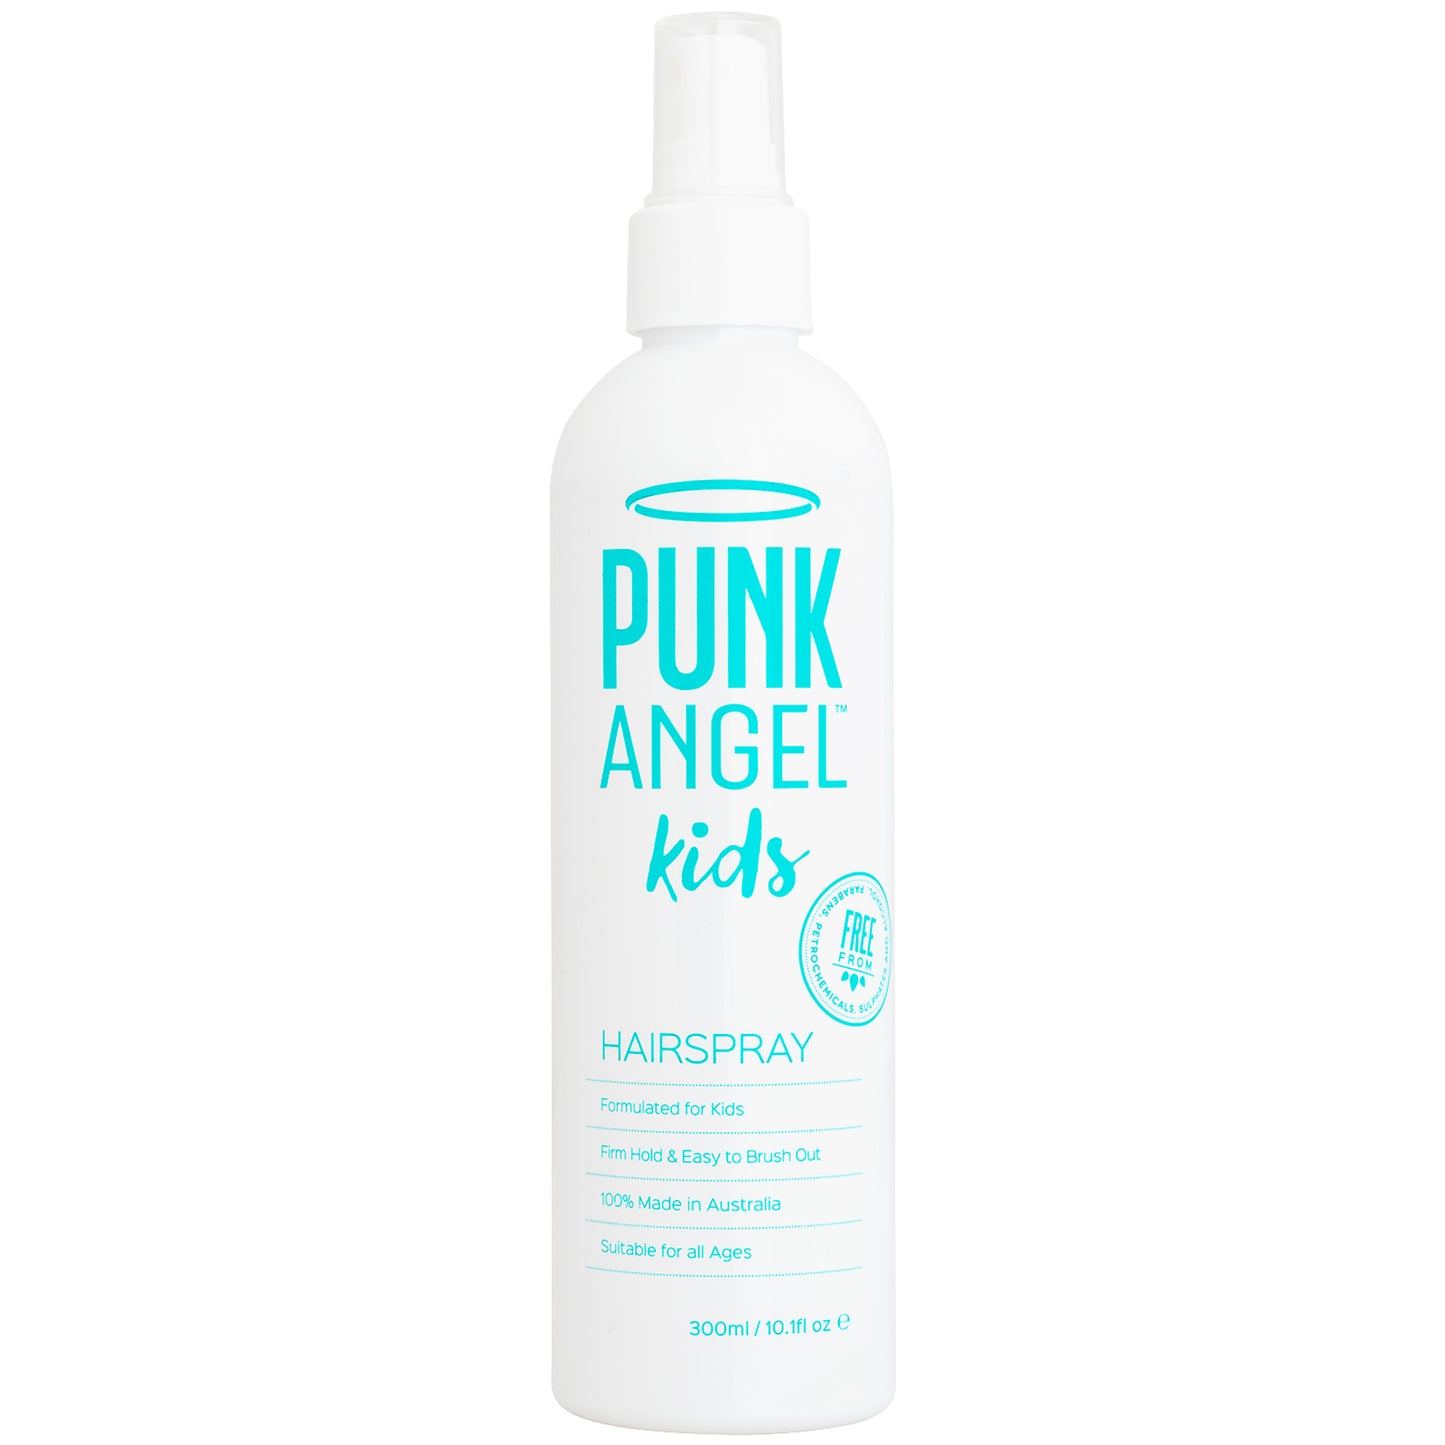 Punk Angel Detangler & Hairspray Value Pack